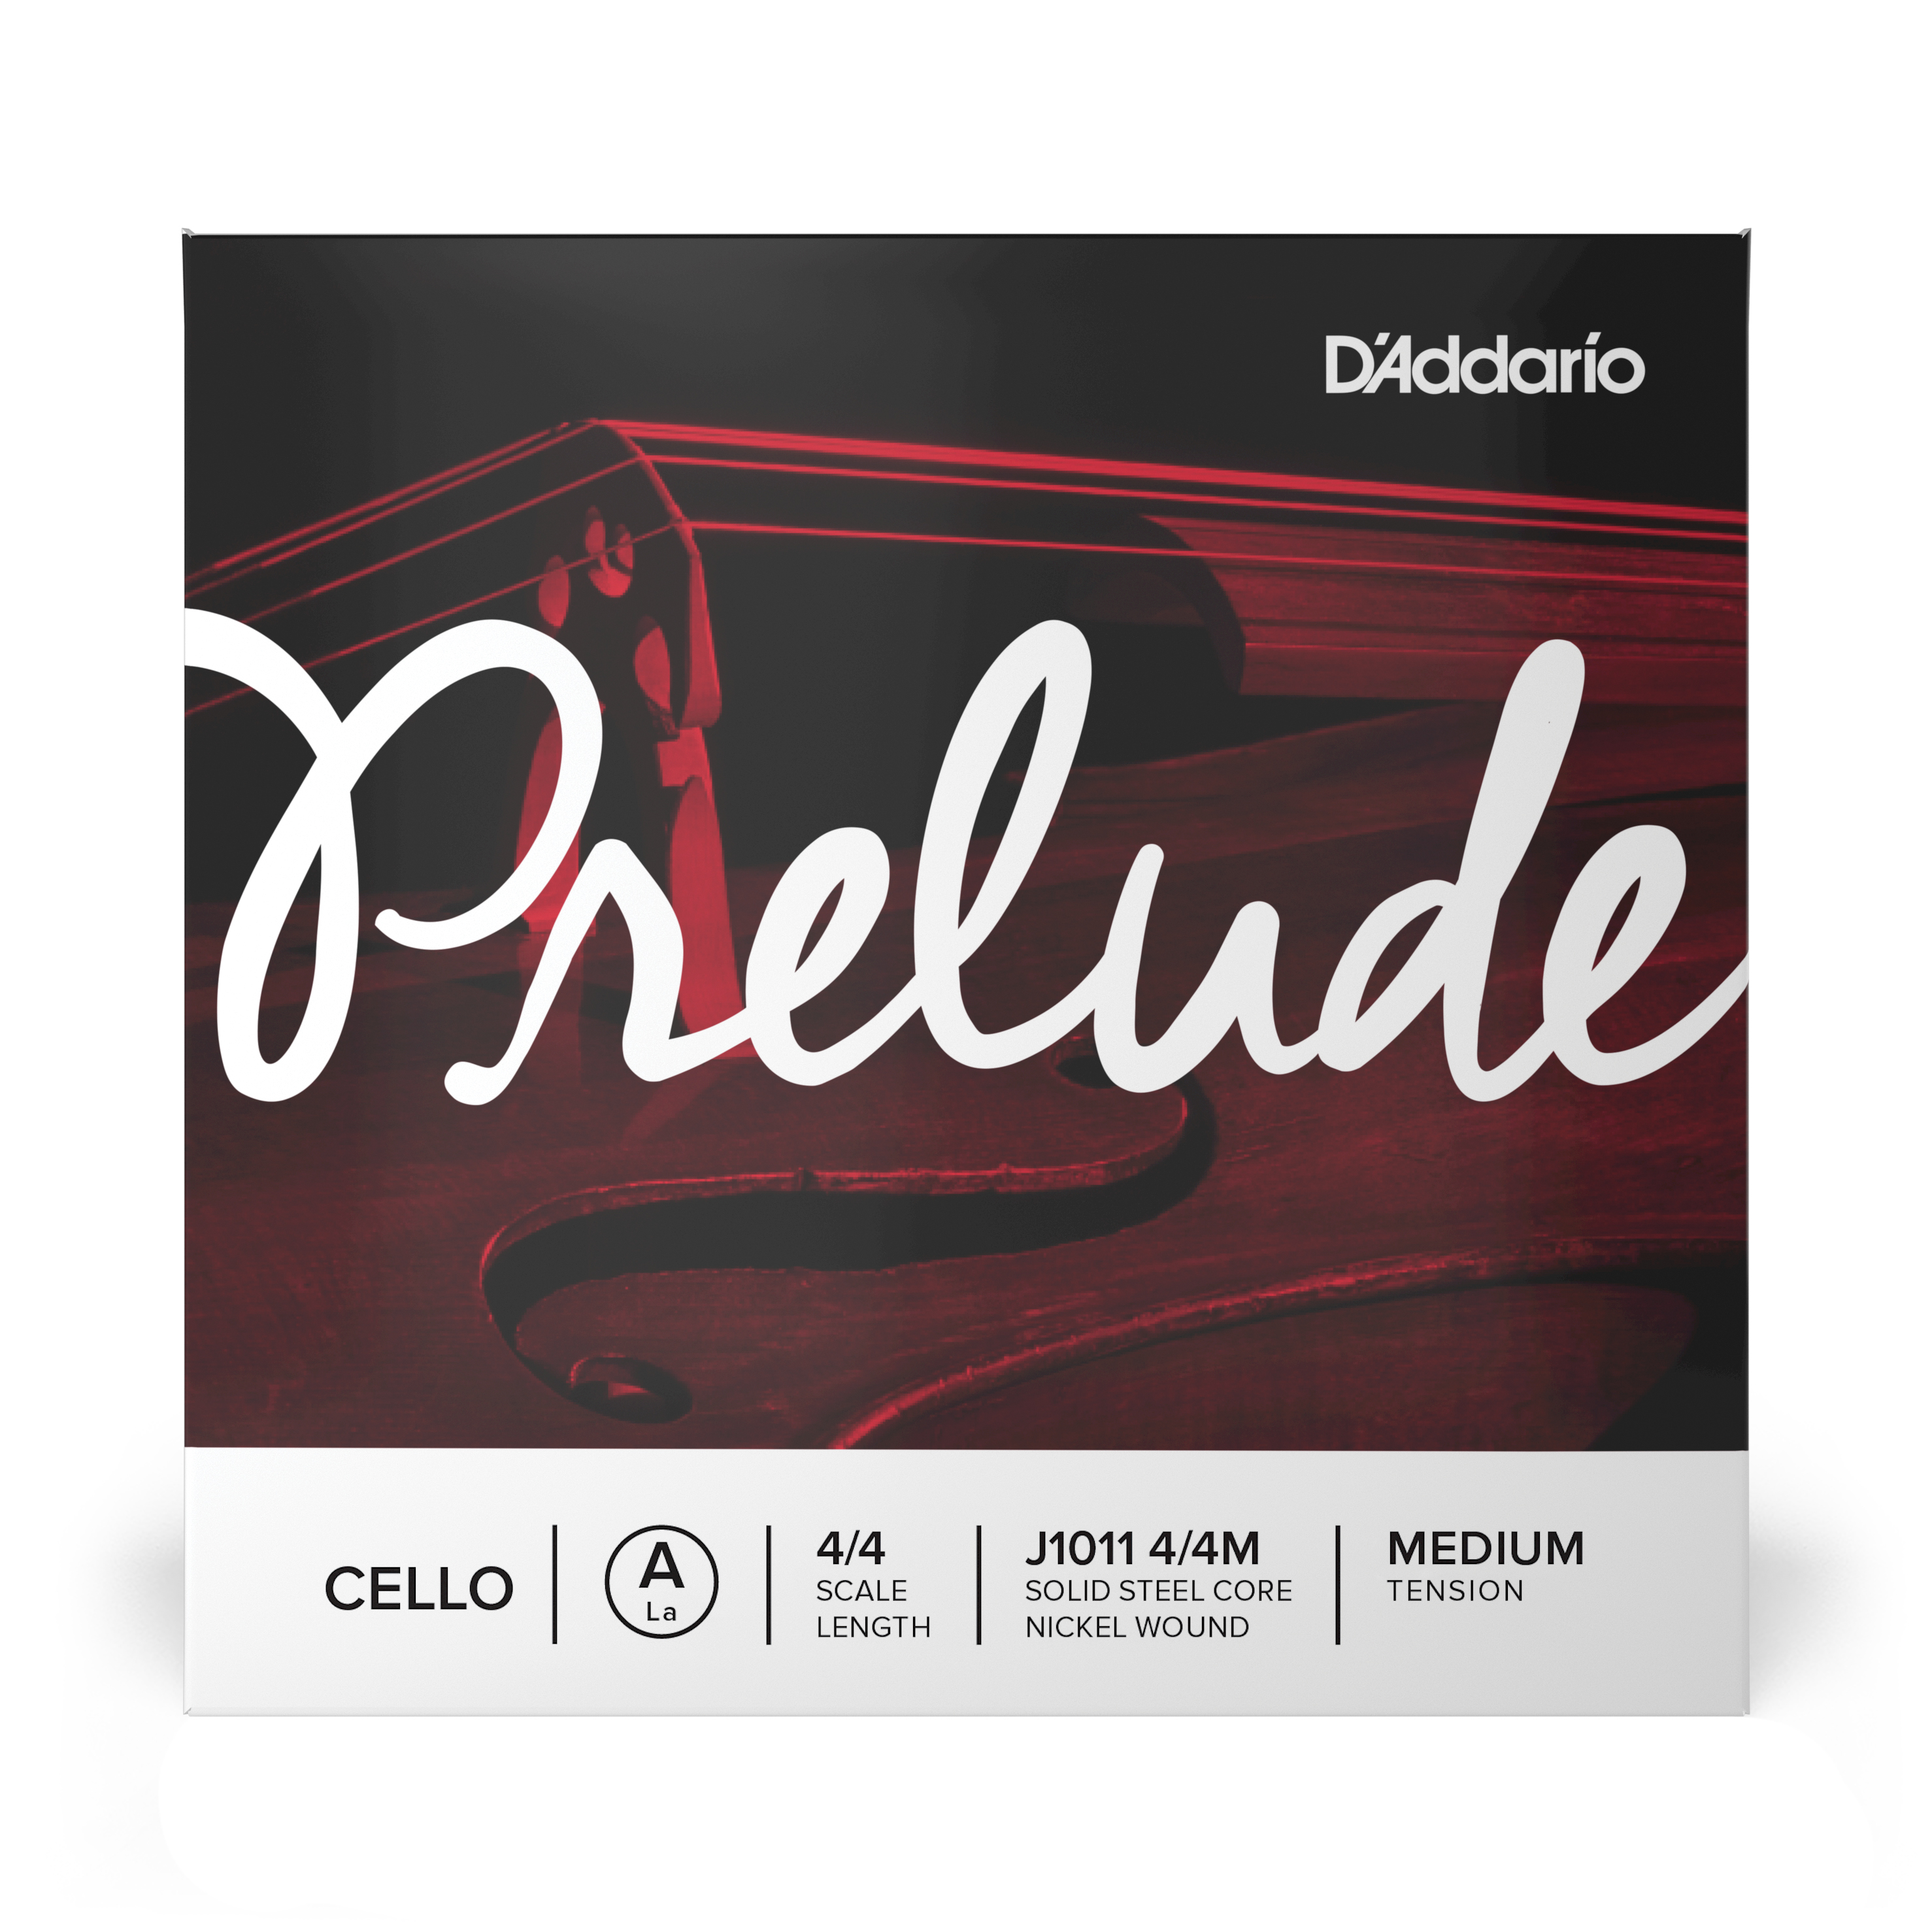 Daddario orchestral it J1011 4/4m corda singola la d'addario prelude per violoncello, scala 4/4, tensione media